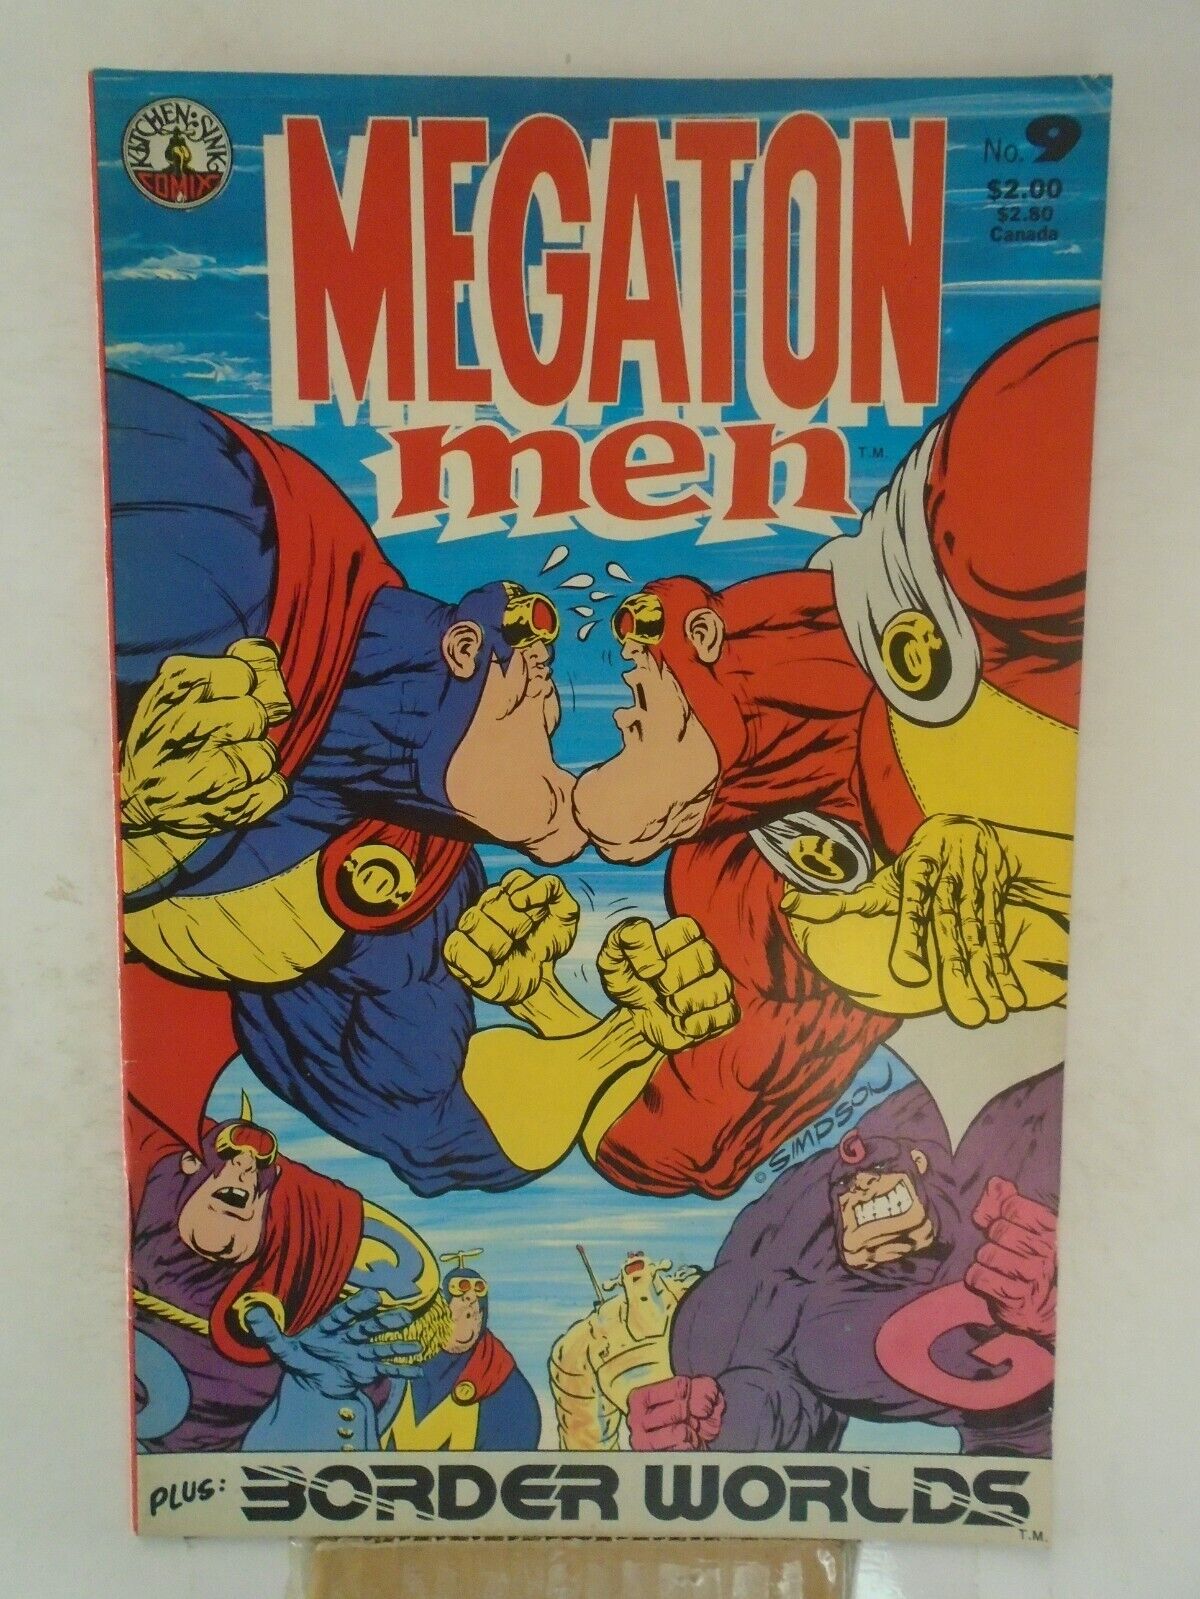 MEGATON MAN #9 (1986) Russian Megaton Man, Don Simpson, Kitchen Sink Press